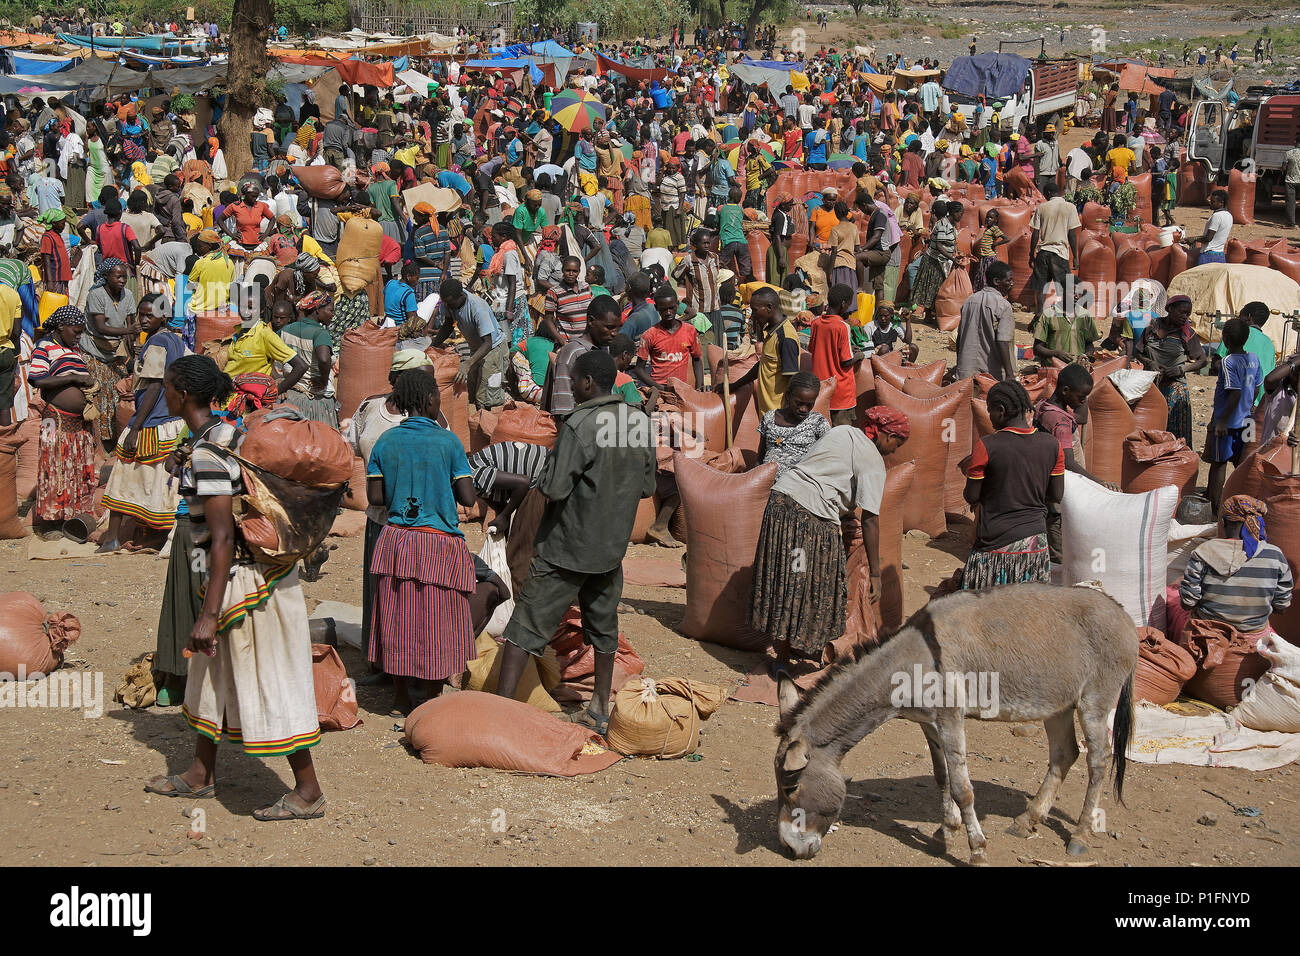 Africa, Etiopia, mercato konzo, Afrika, Aethiopien Konzo, Markt Foto Stock